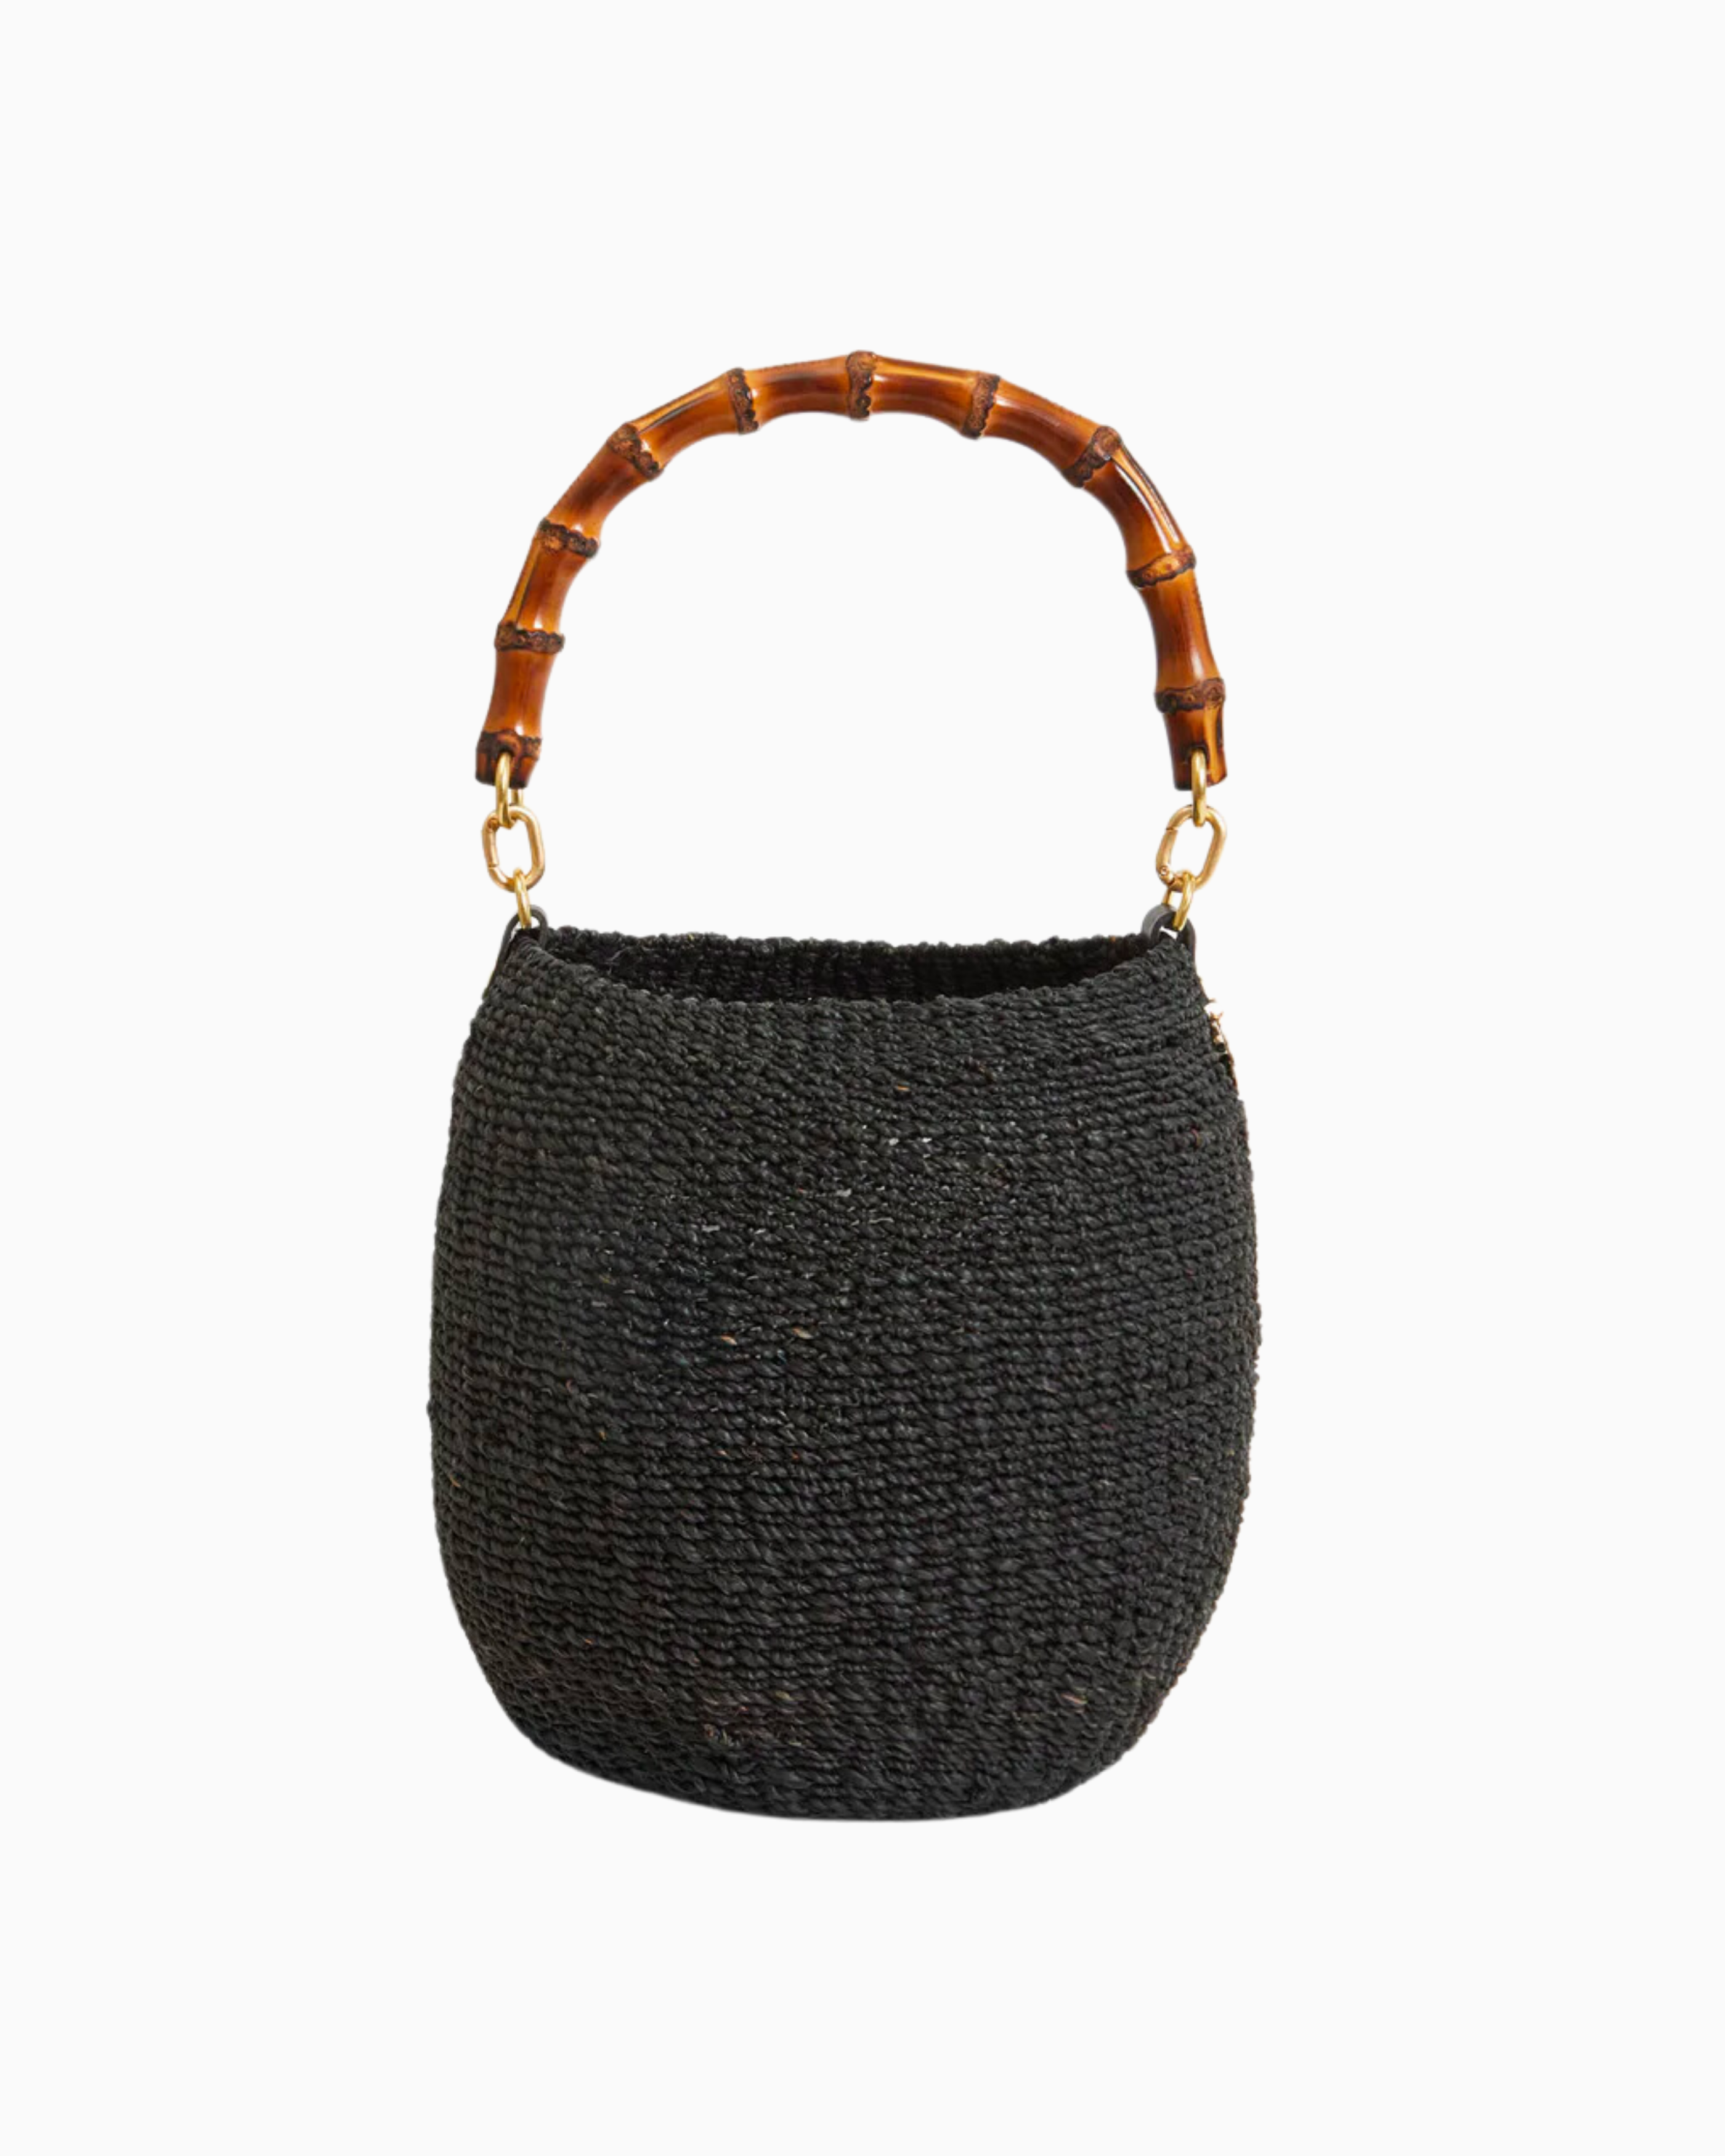 Clare V. Pot De Miel Bamboo Handle Bag in Black